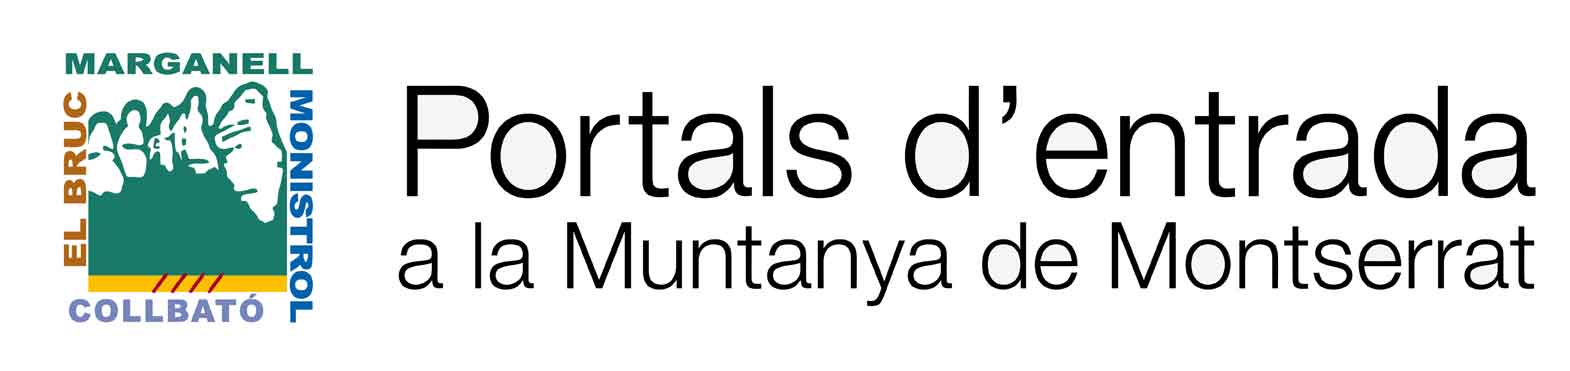 Logo Portals d'entrada de a la Muntanya de Montserrat